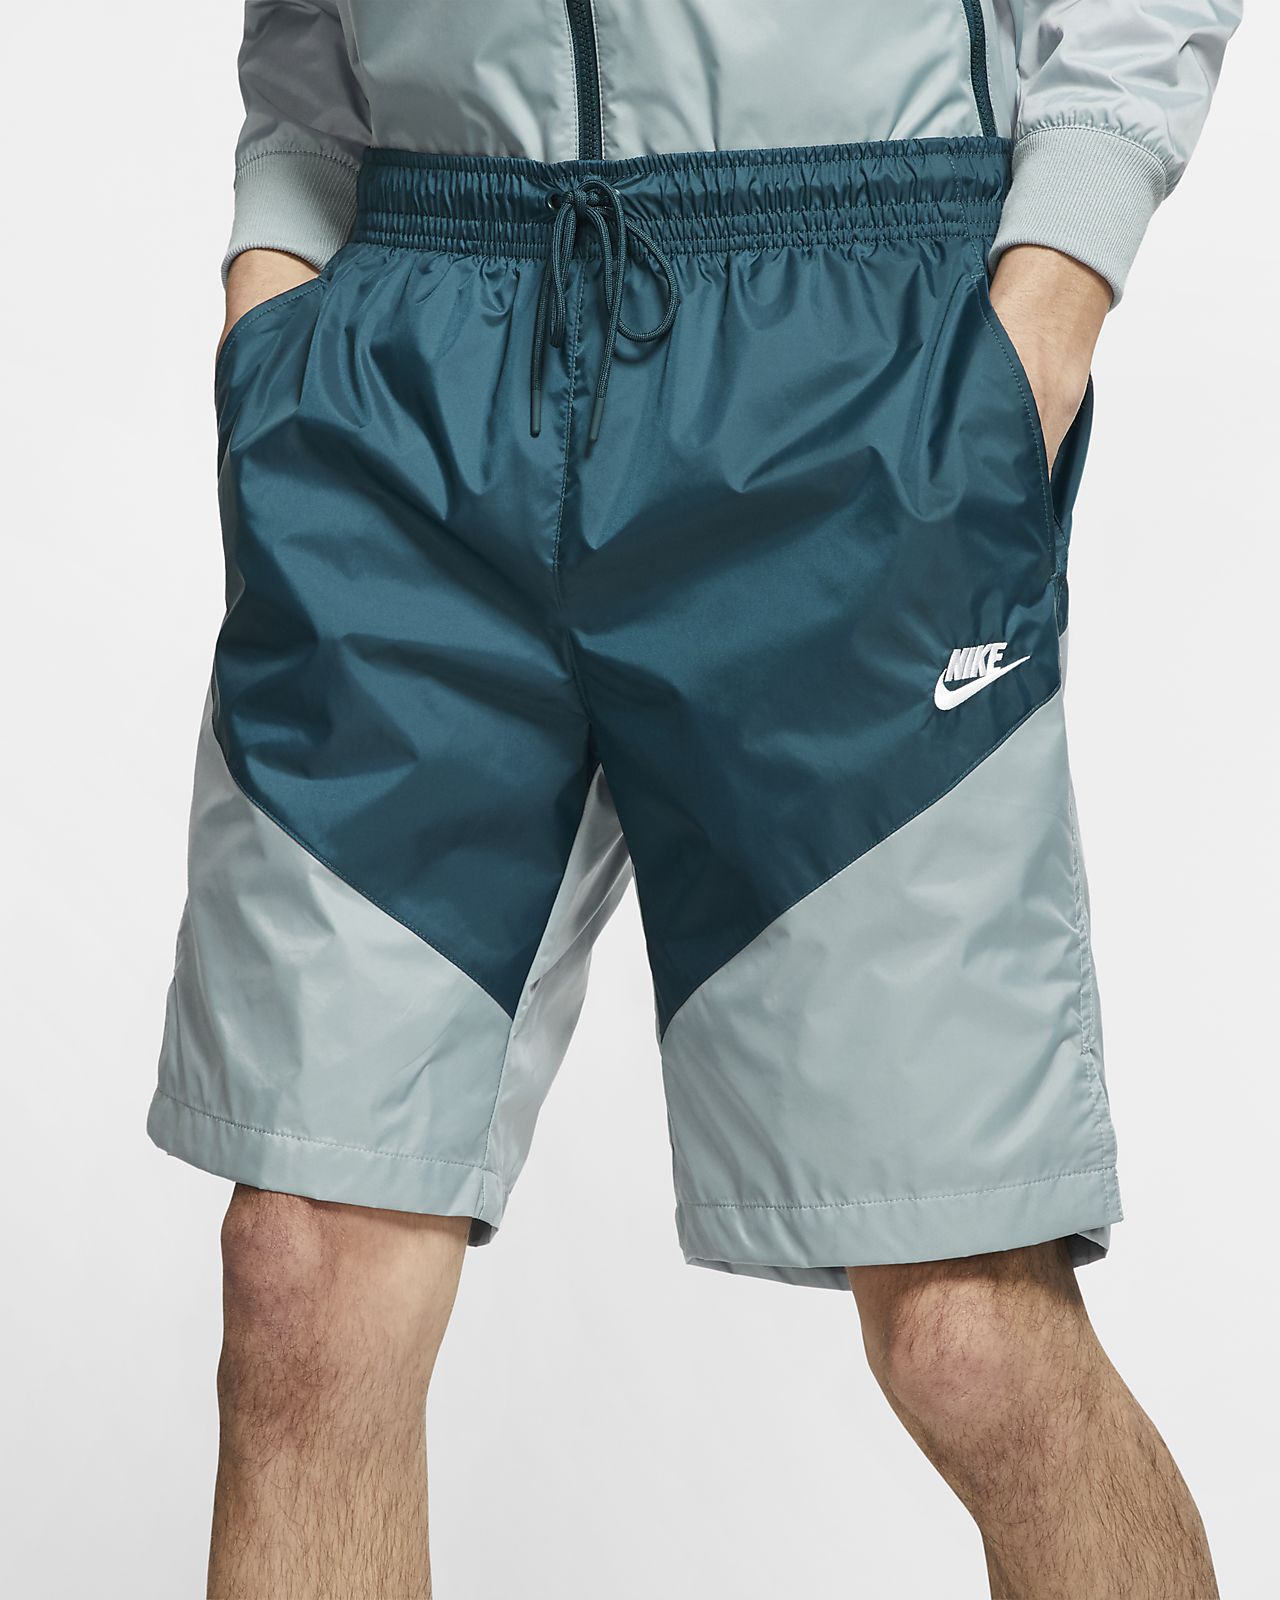 windbreaker nike shorts